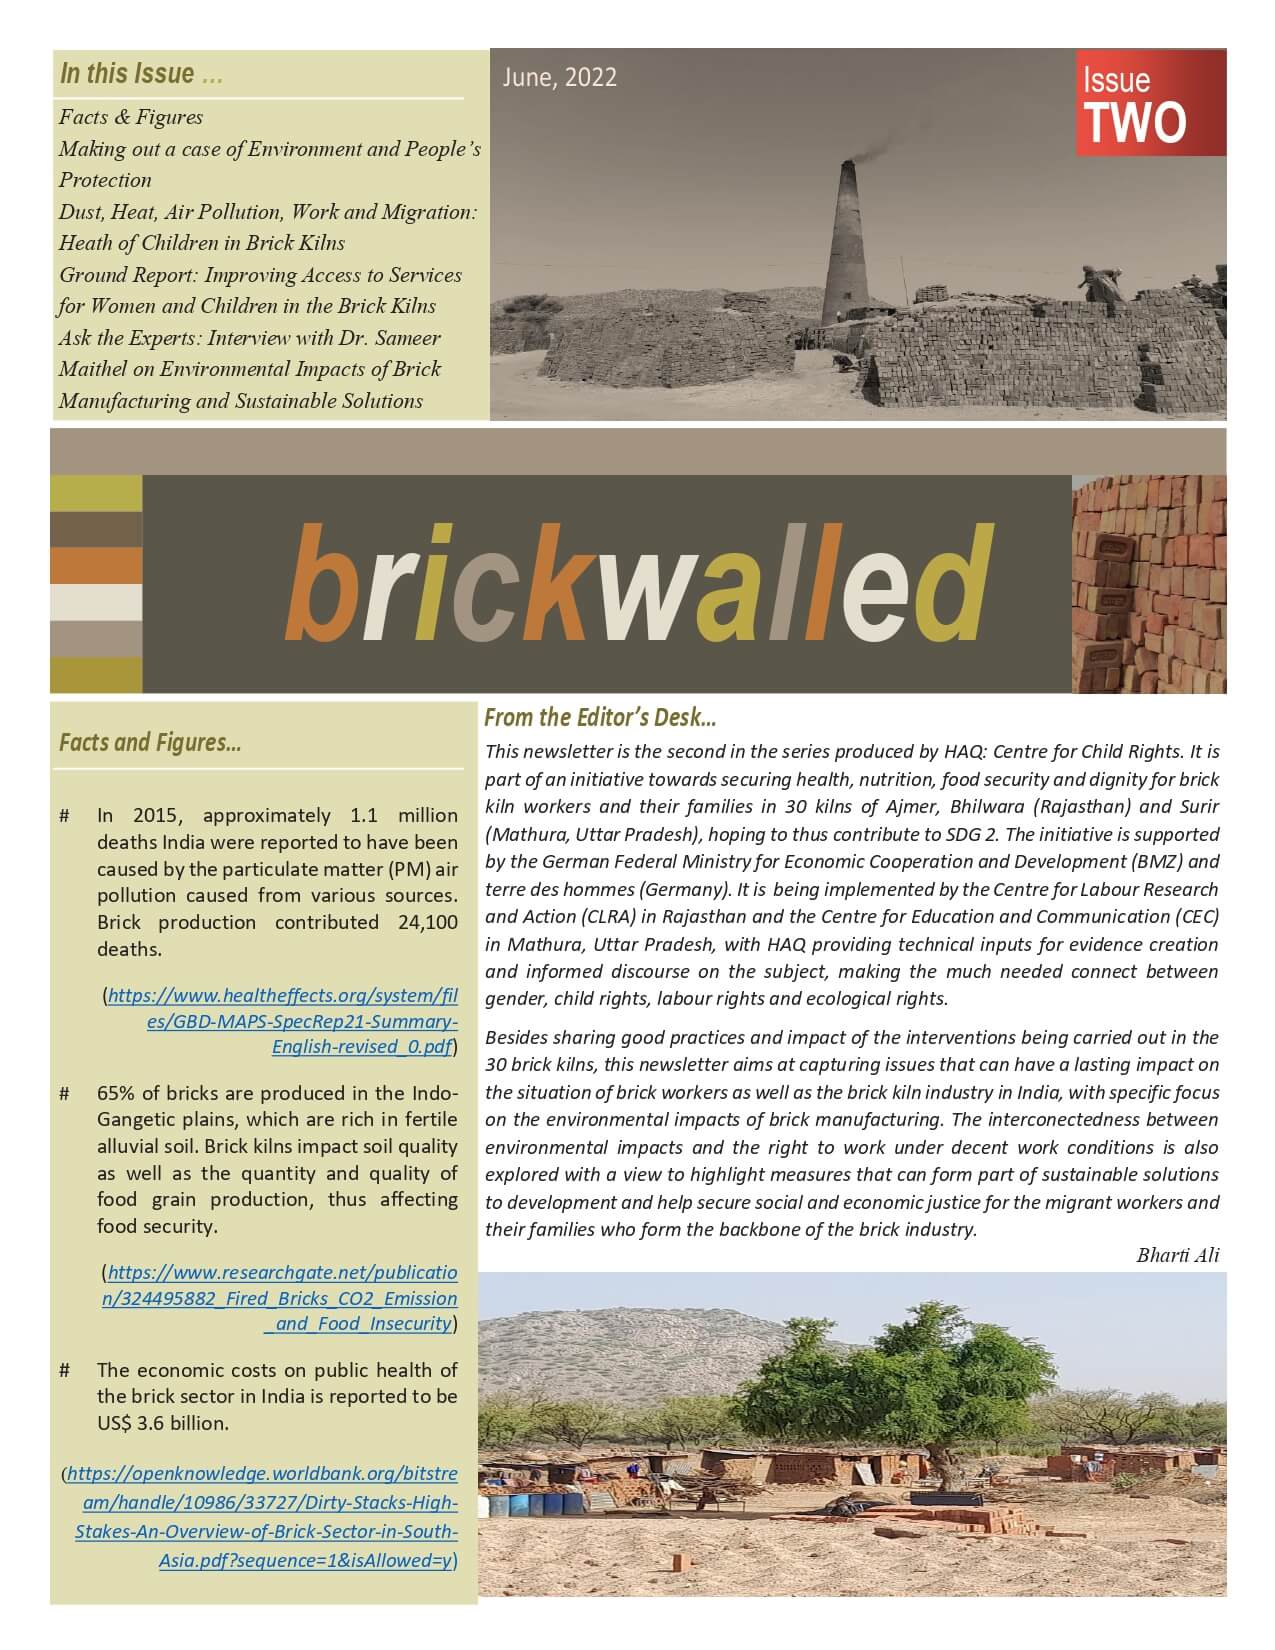 Brickwalled Newsletter Issue 2 June 2022